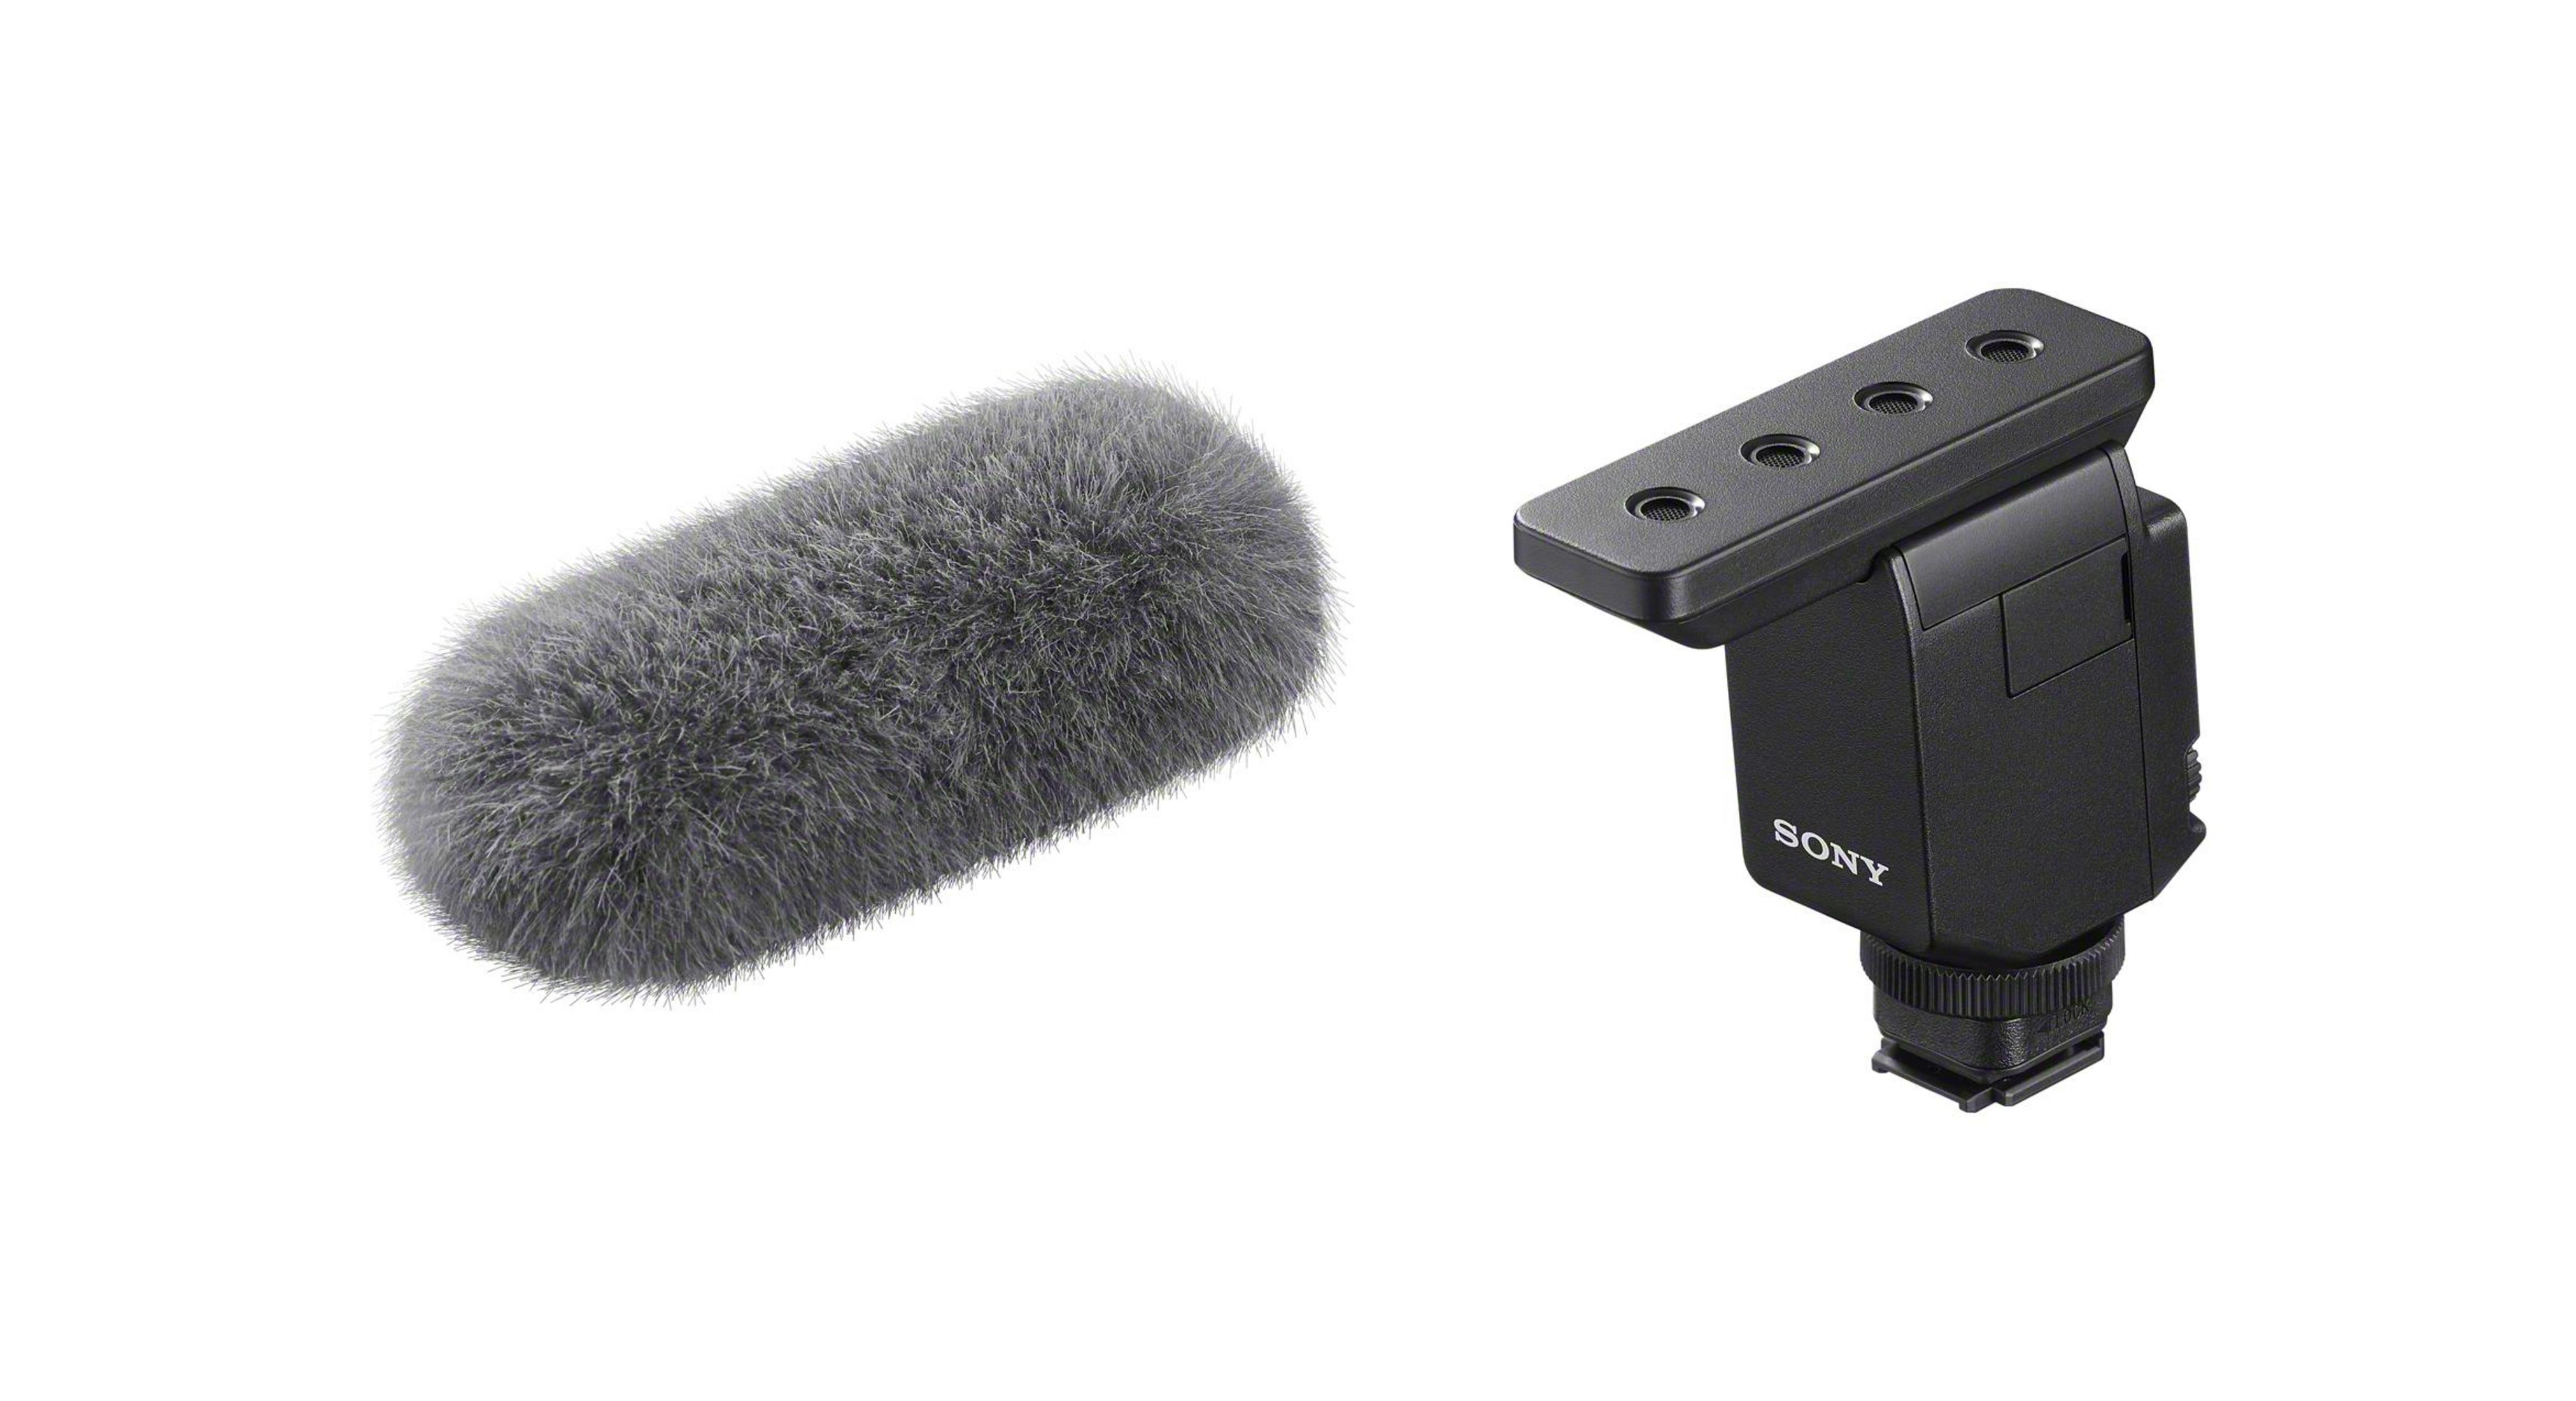 ECM-B10 Mikrofon VX9527 SONY